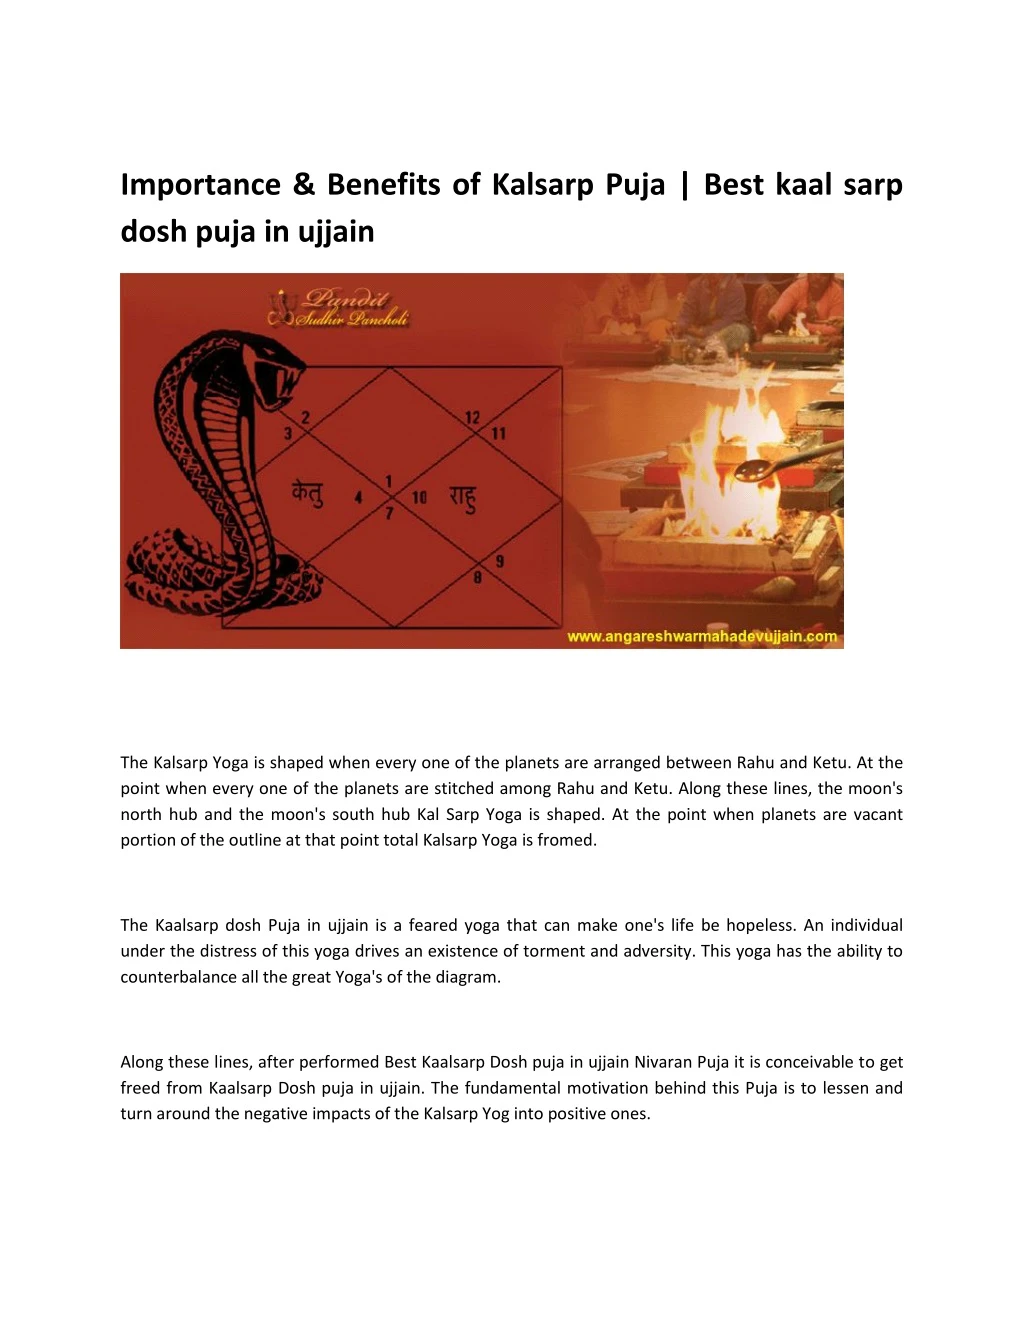 importance benefits of kalsarp puja best kaal